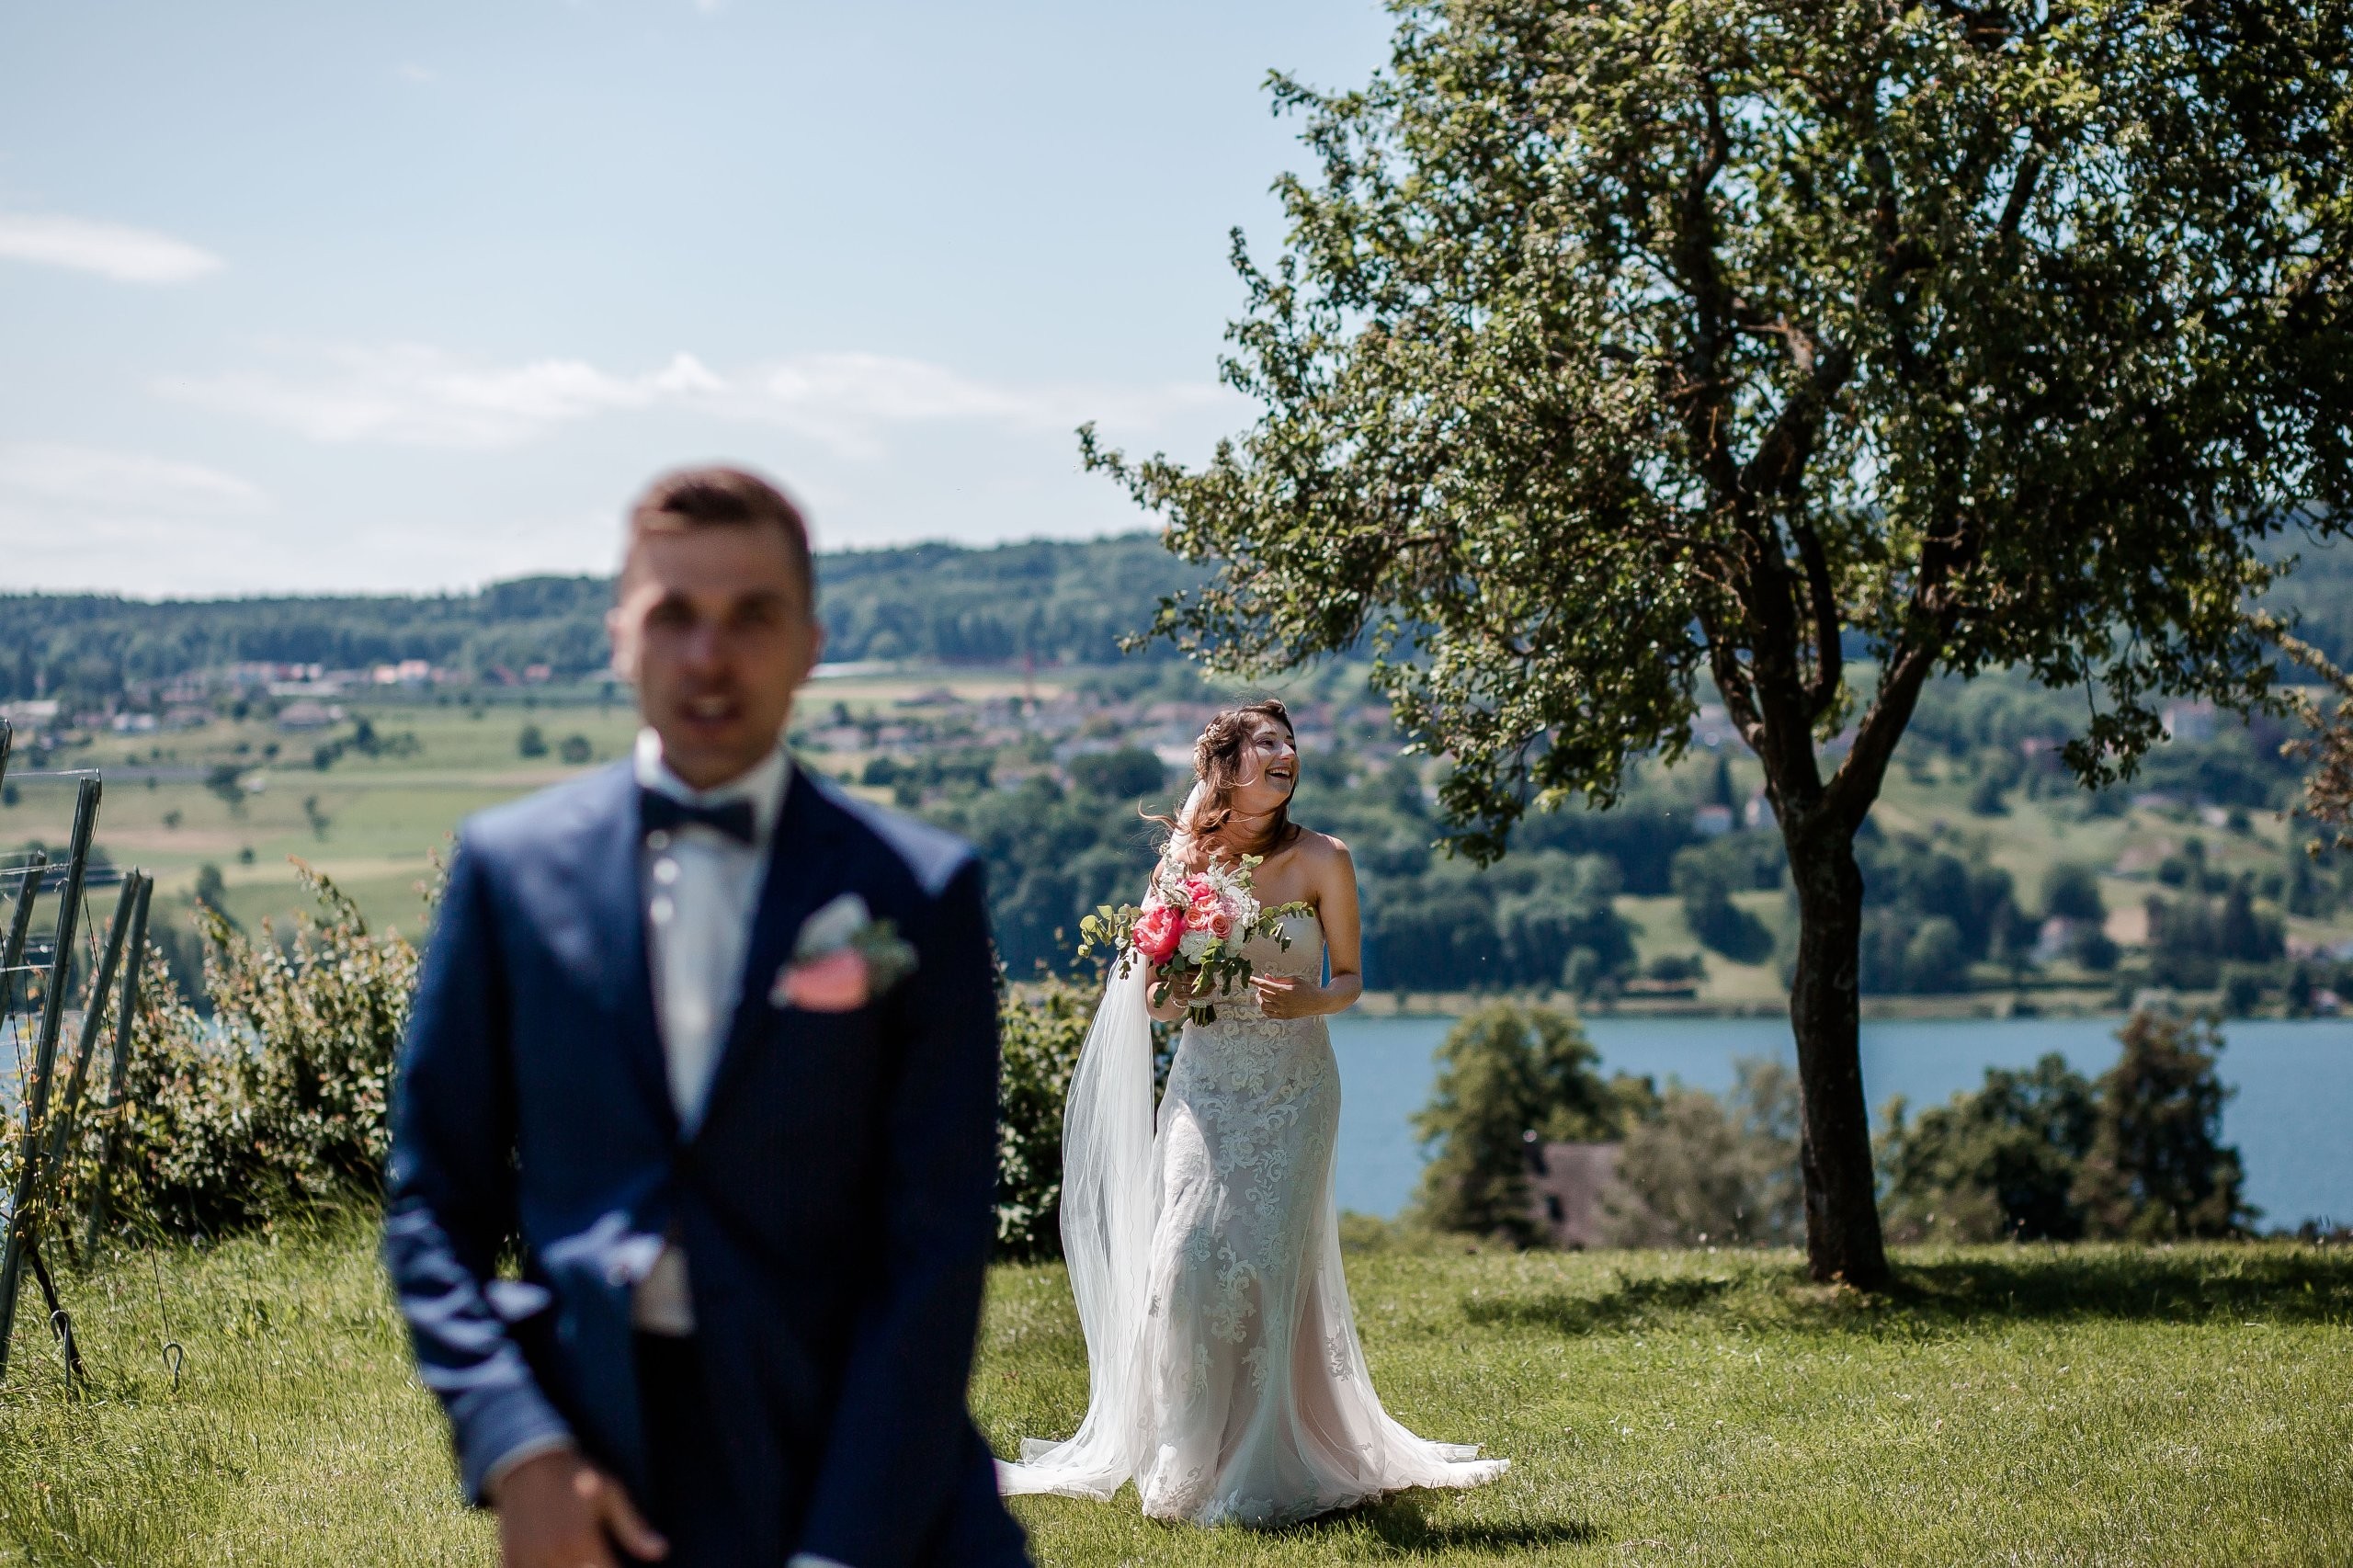 Aida + Tim | Hochzeitsfotografen am Bodensee Hochzeit - Insel Mainau, Konstanz  - Hochzeitsfotografie von Aida und Tim